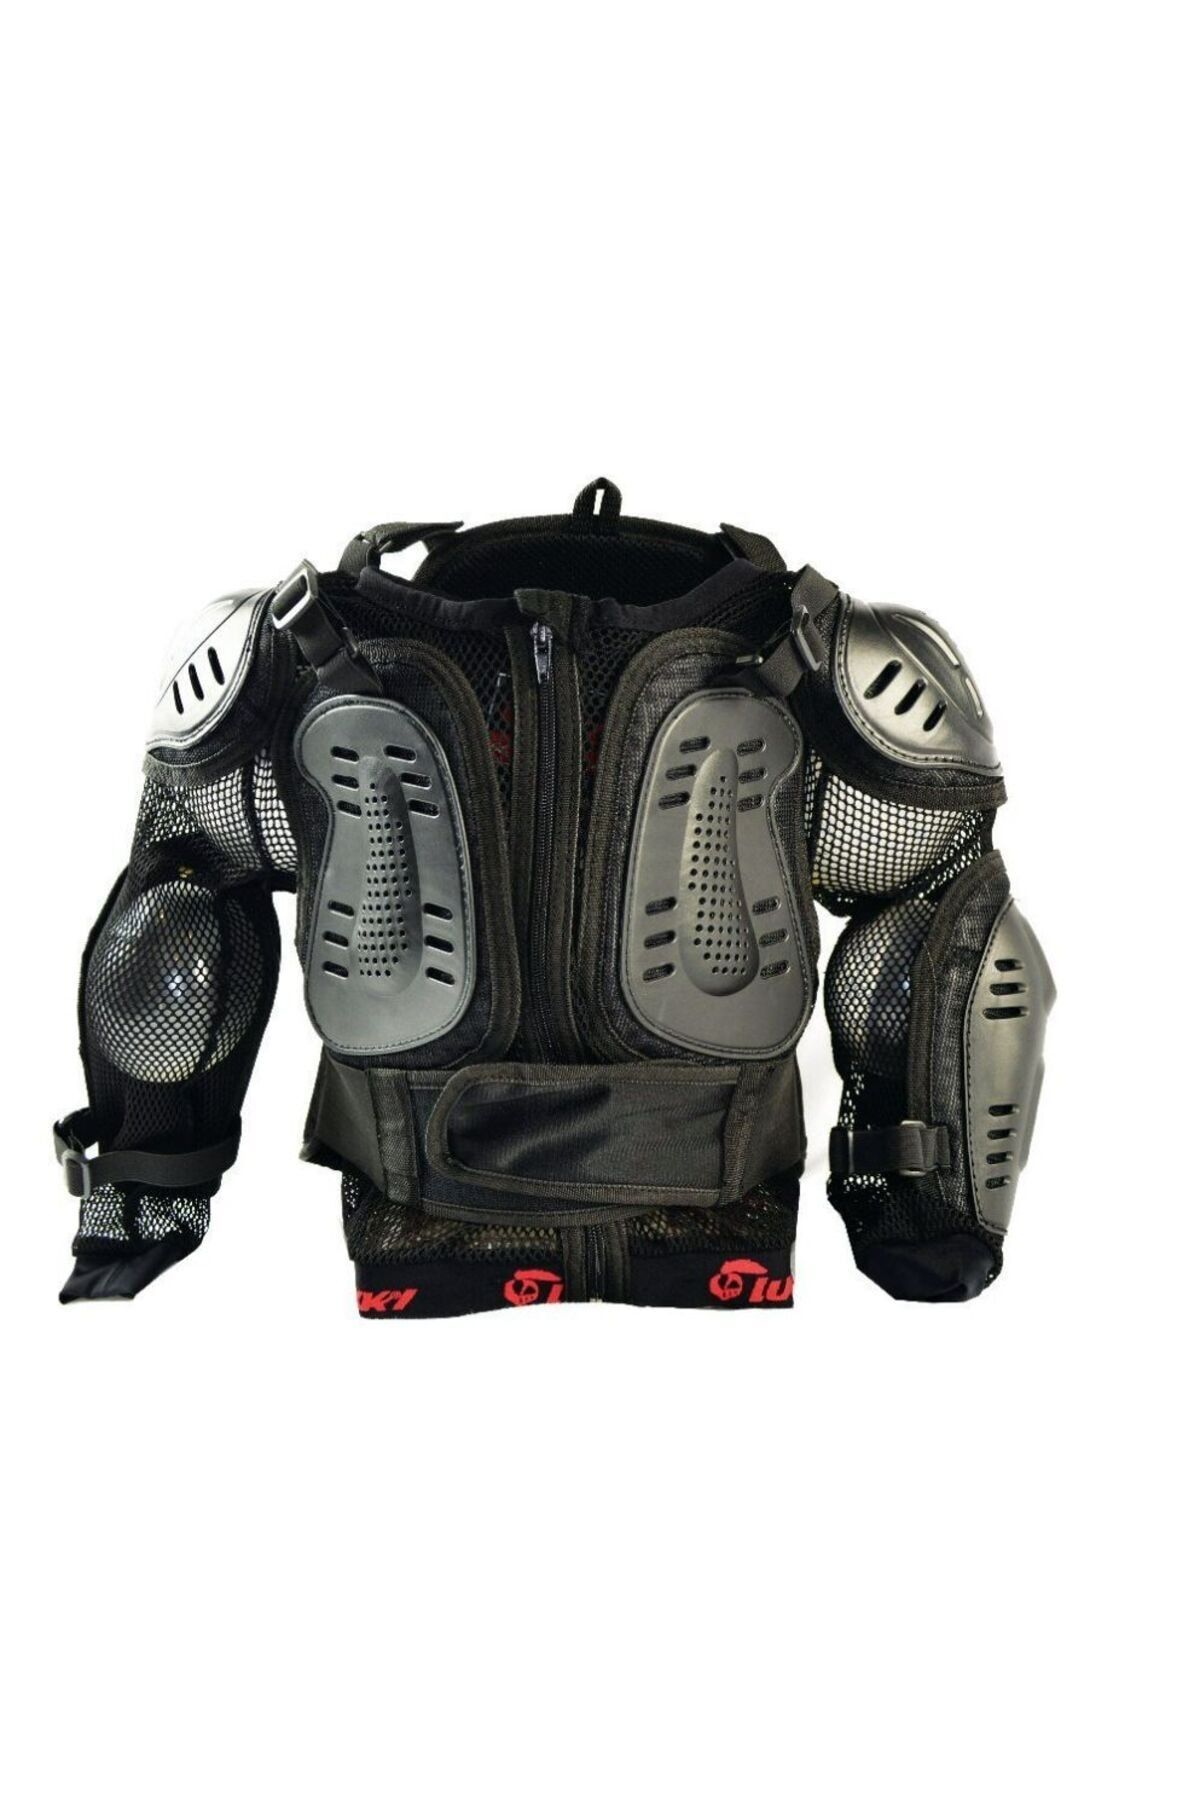 MOTOANL Motosiklet Çocuk Body Armor Full Koruma Cross Giysi Motor Full Koruyucu Armor